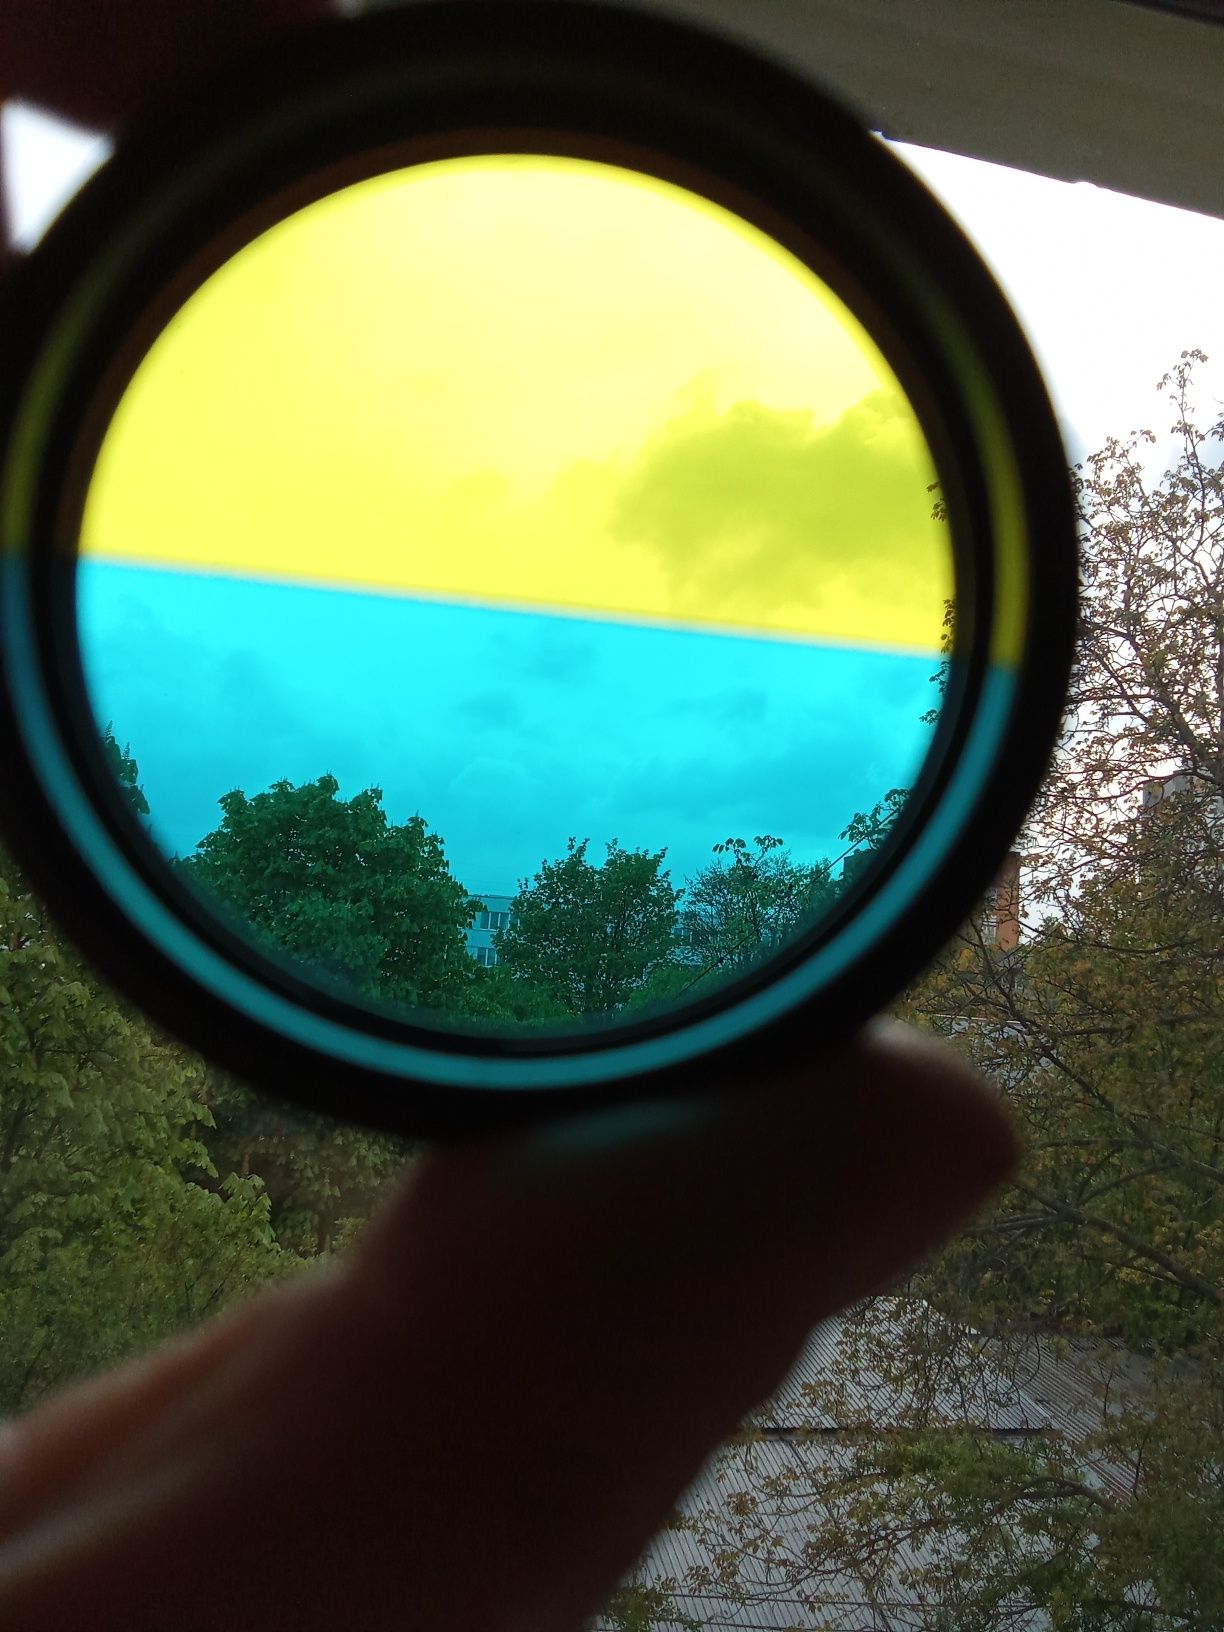 filtr światła do obiektywu. żółty niebieski 52×075 radziecki